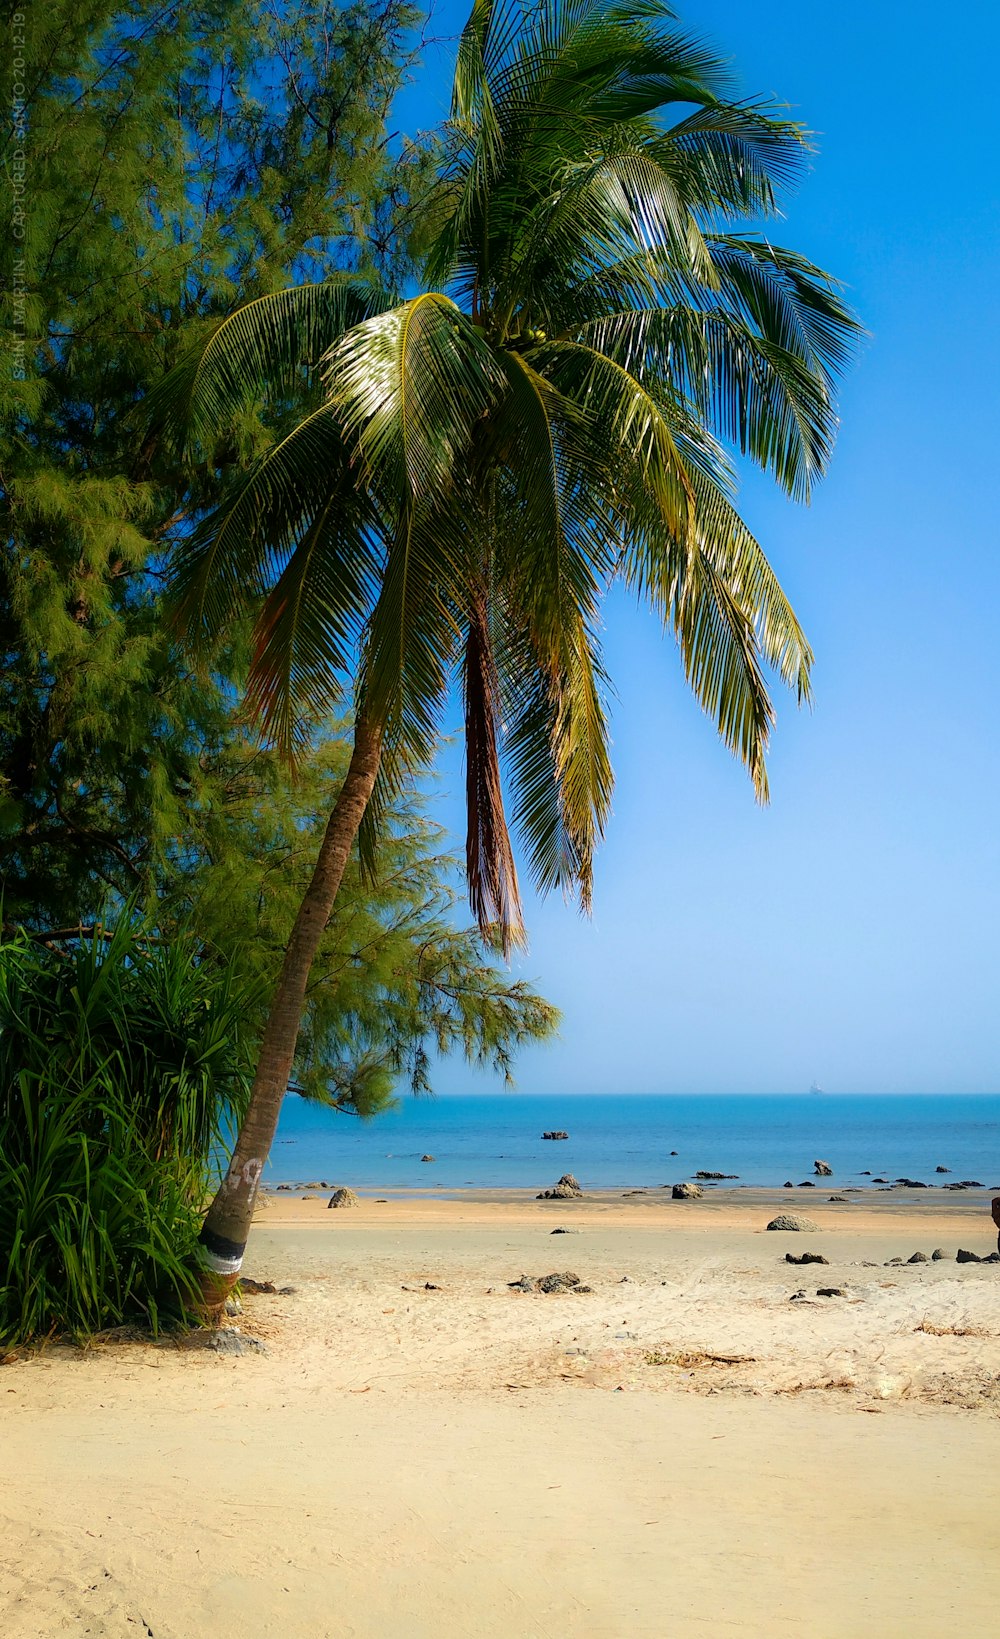 Palmier vert sur la plage pendant la journée